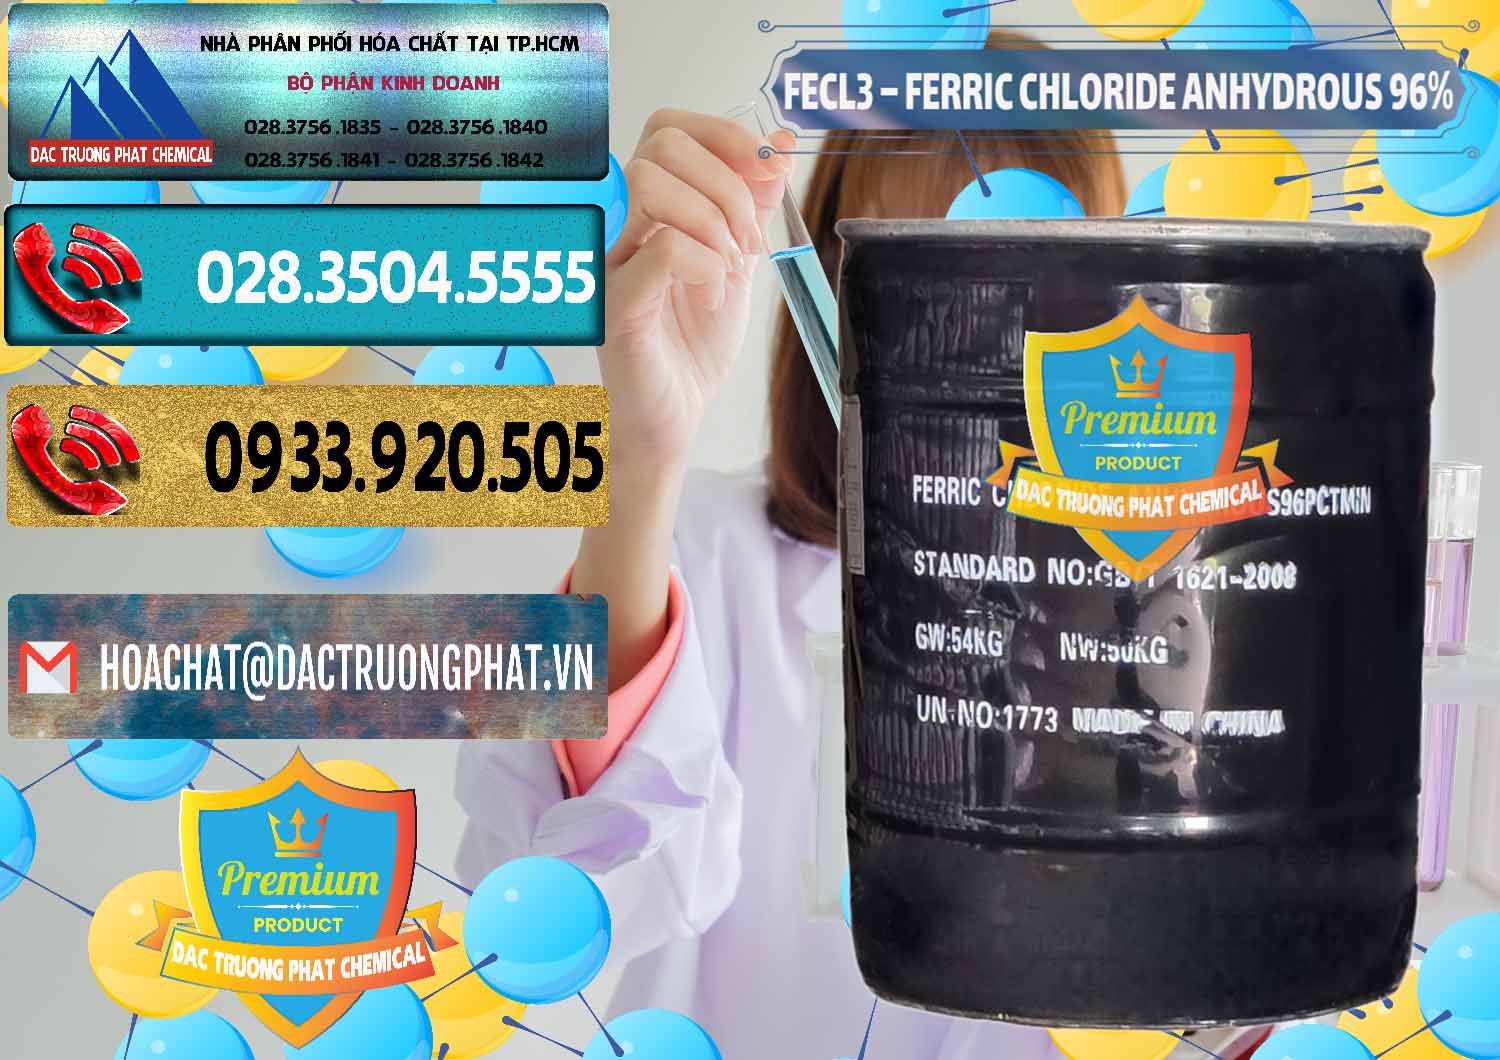 Nơi kinh doanh ( bán ) FECL3 – Ferric Chloride Anhydrous 96% Trung Quốc China - 0065 - Nơi chuyên nhập khẩu & phân phối hóa chất tại TP.HCM - hoachatdetnhuom.com